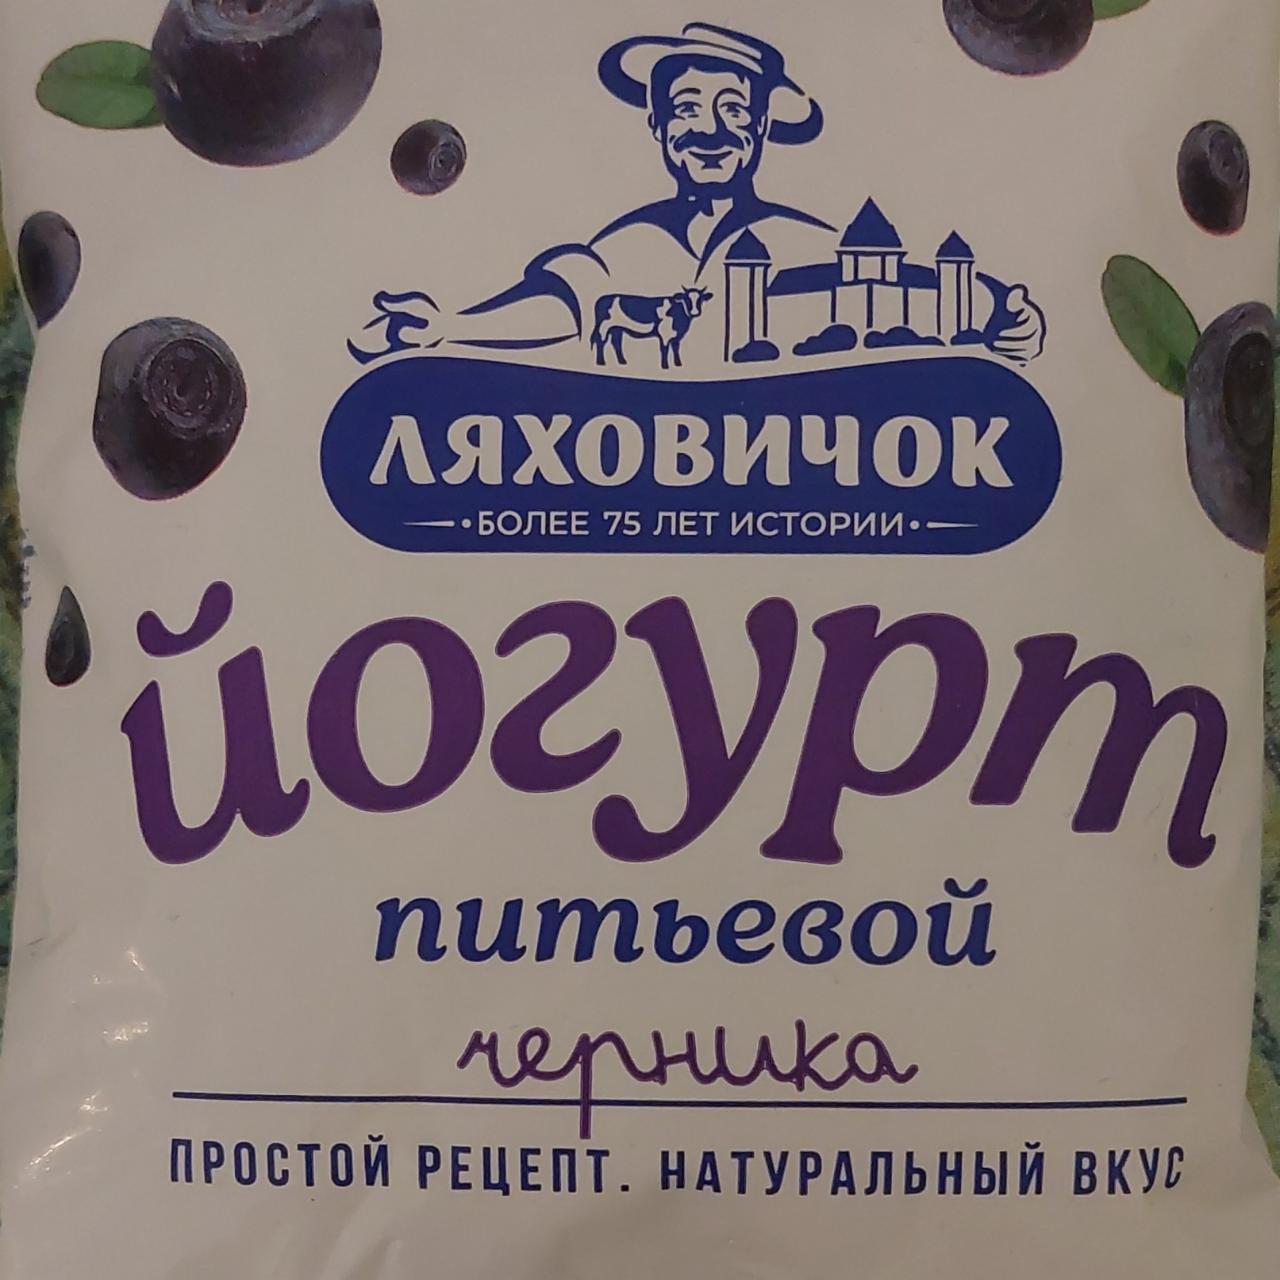 Фото - Йогурт питьевой черника Ляховичок